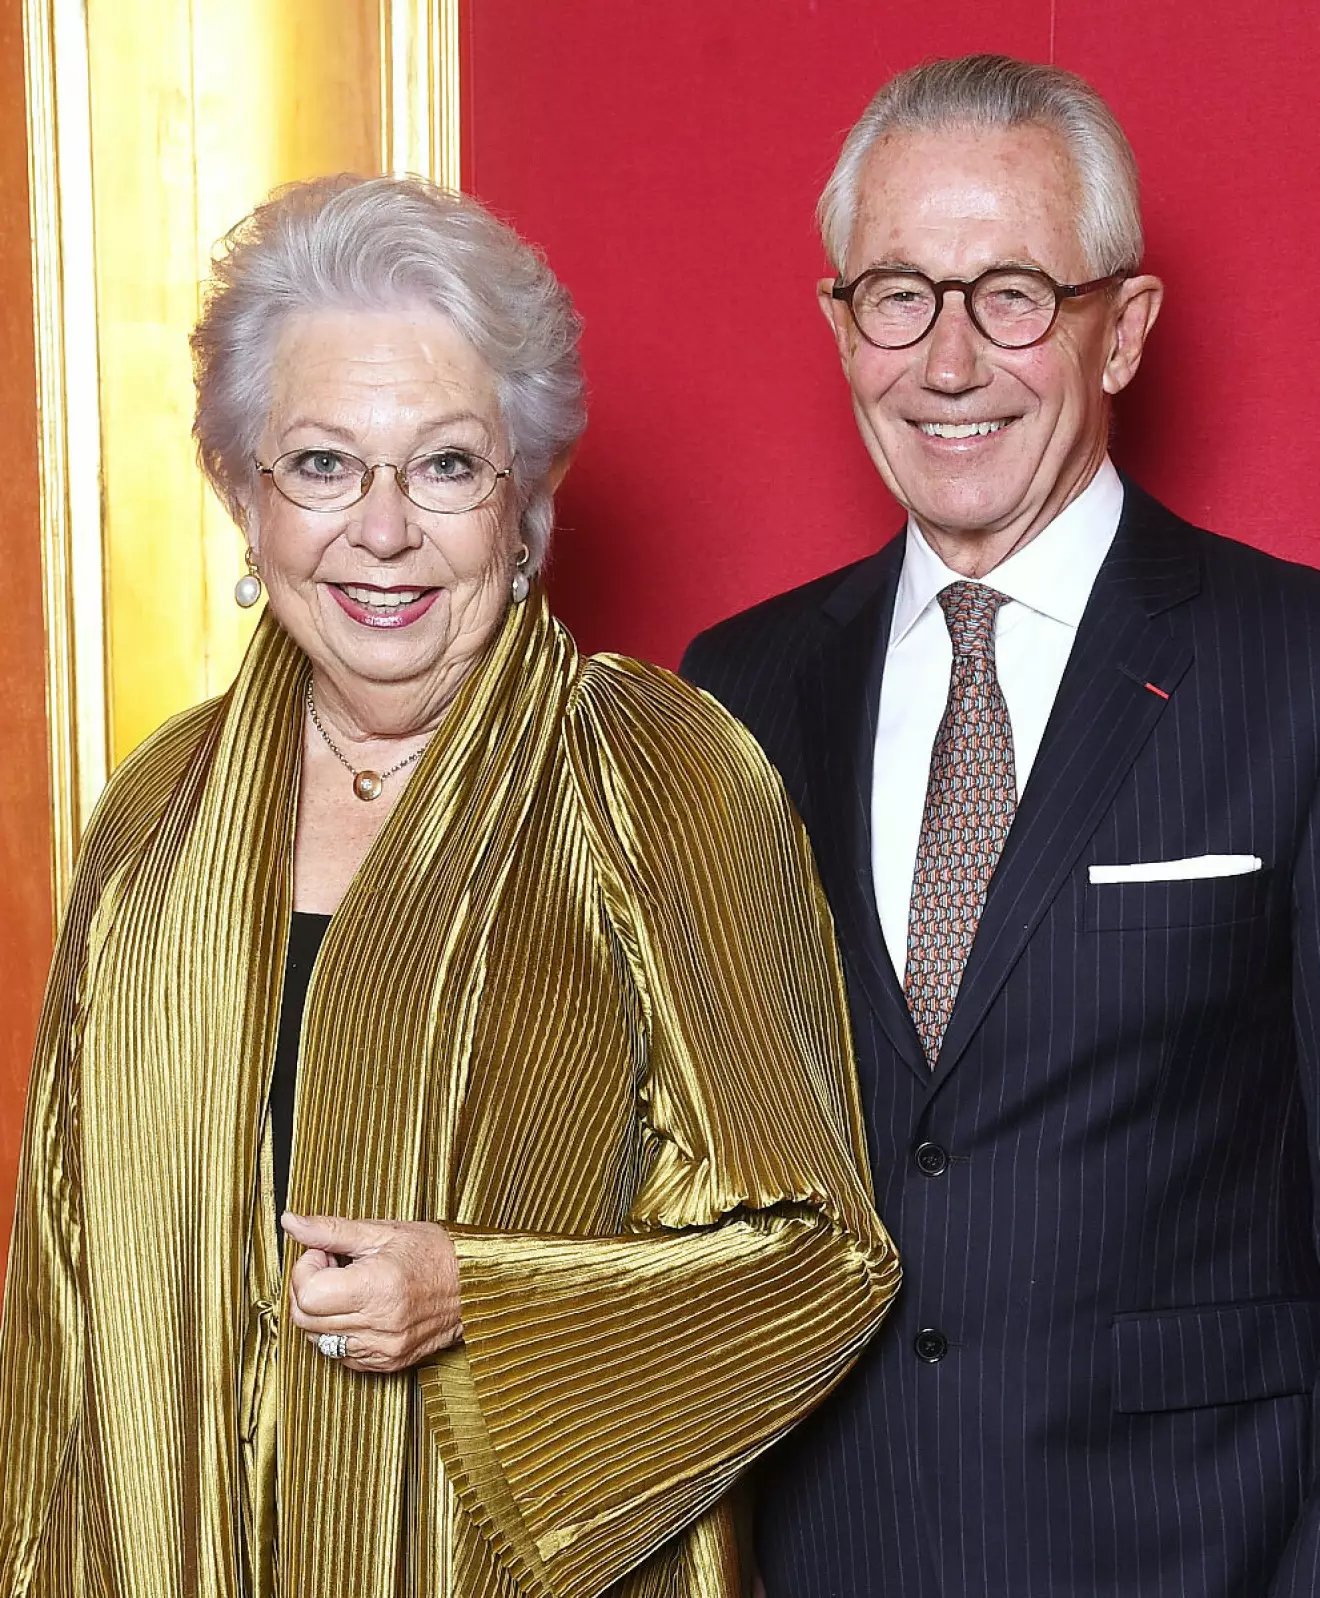 Guldbröllop för prinsessan Christina och Tord Magnuson – gifta i 50 år